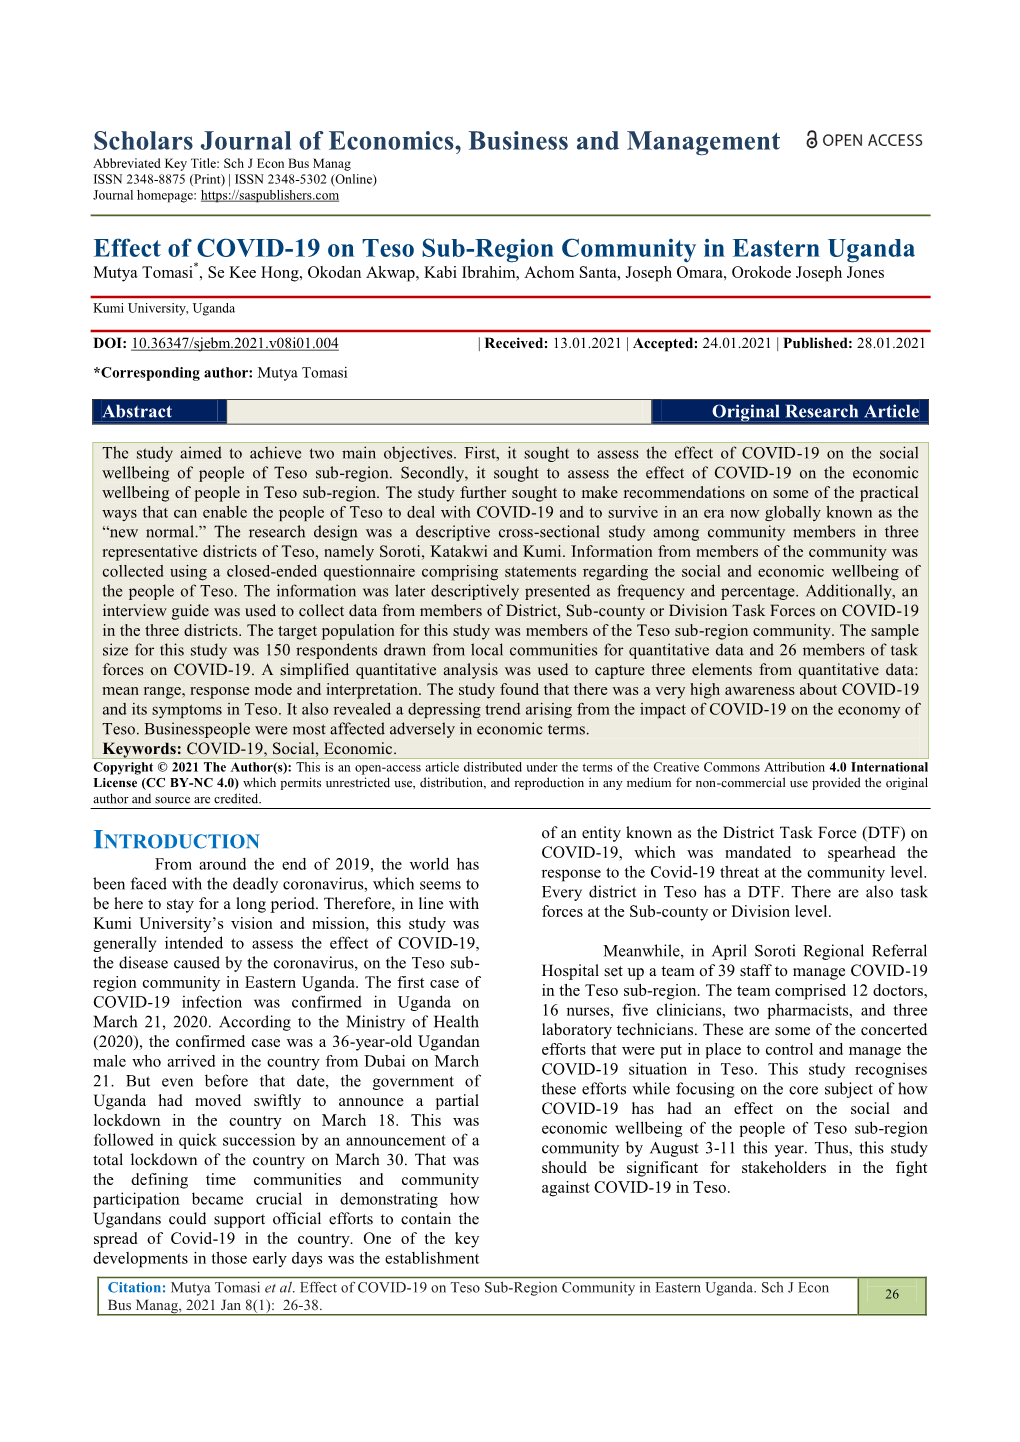 Effect of COVID-19 on Teso Sub-Region Community in Eastern